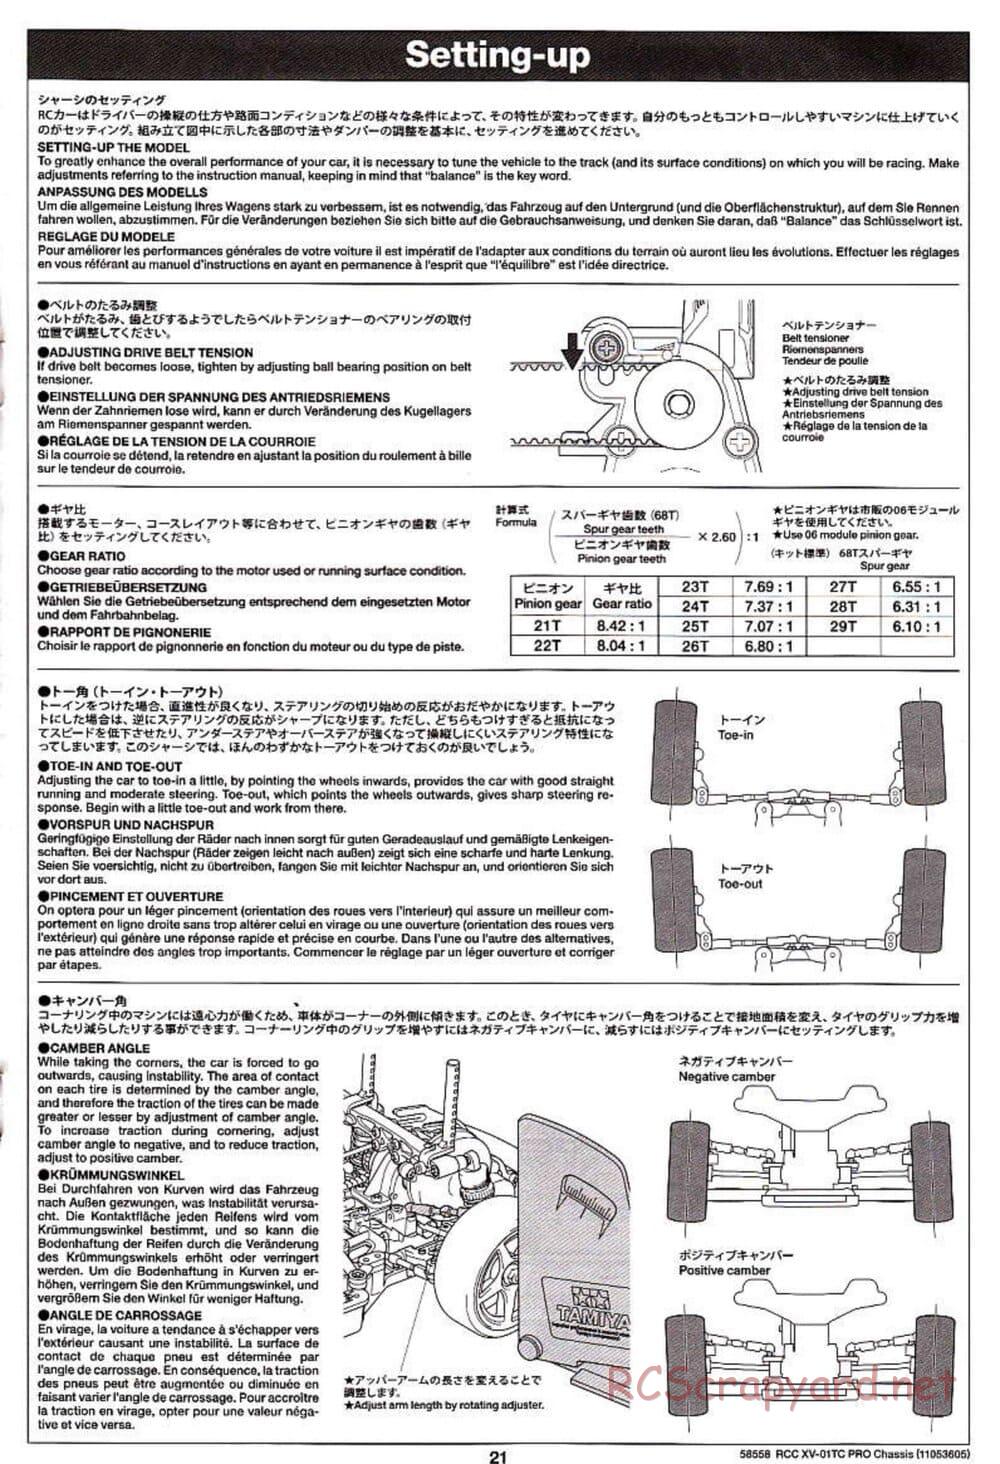 Tamiya - XV-01TC Chassis - Manual - Page 21